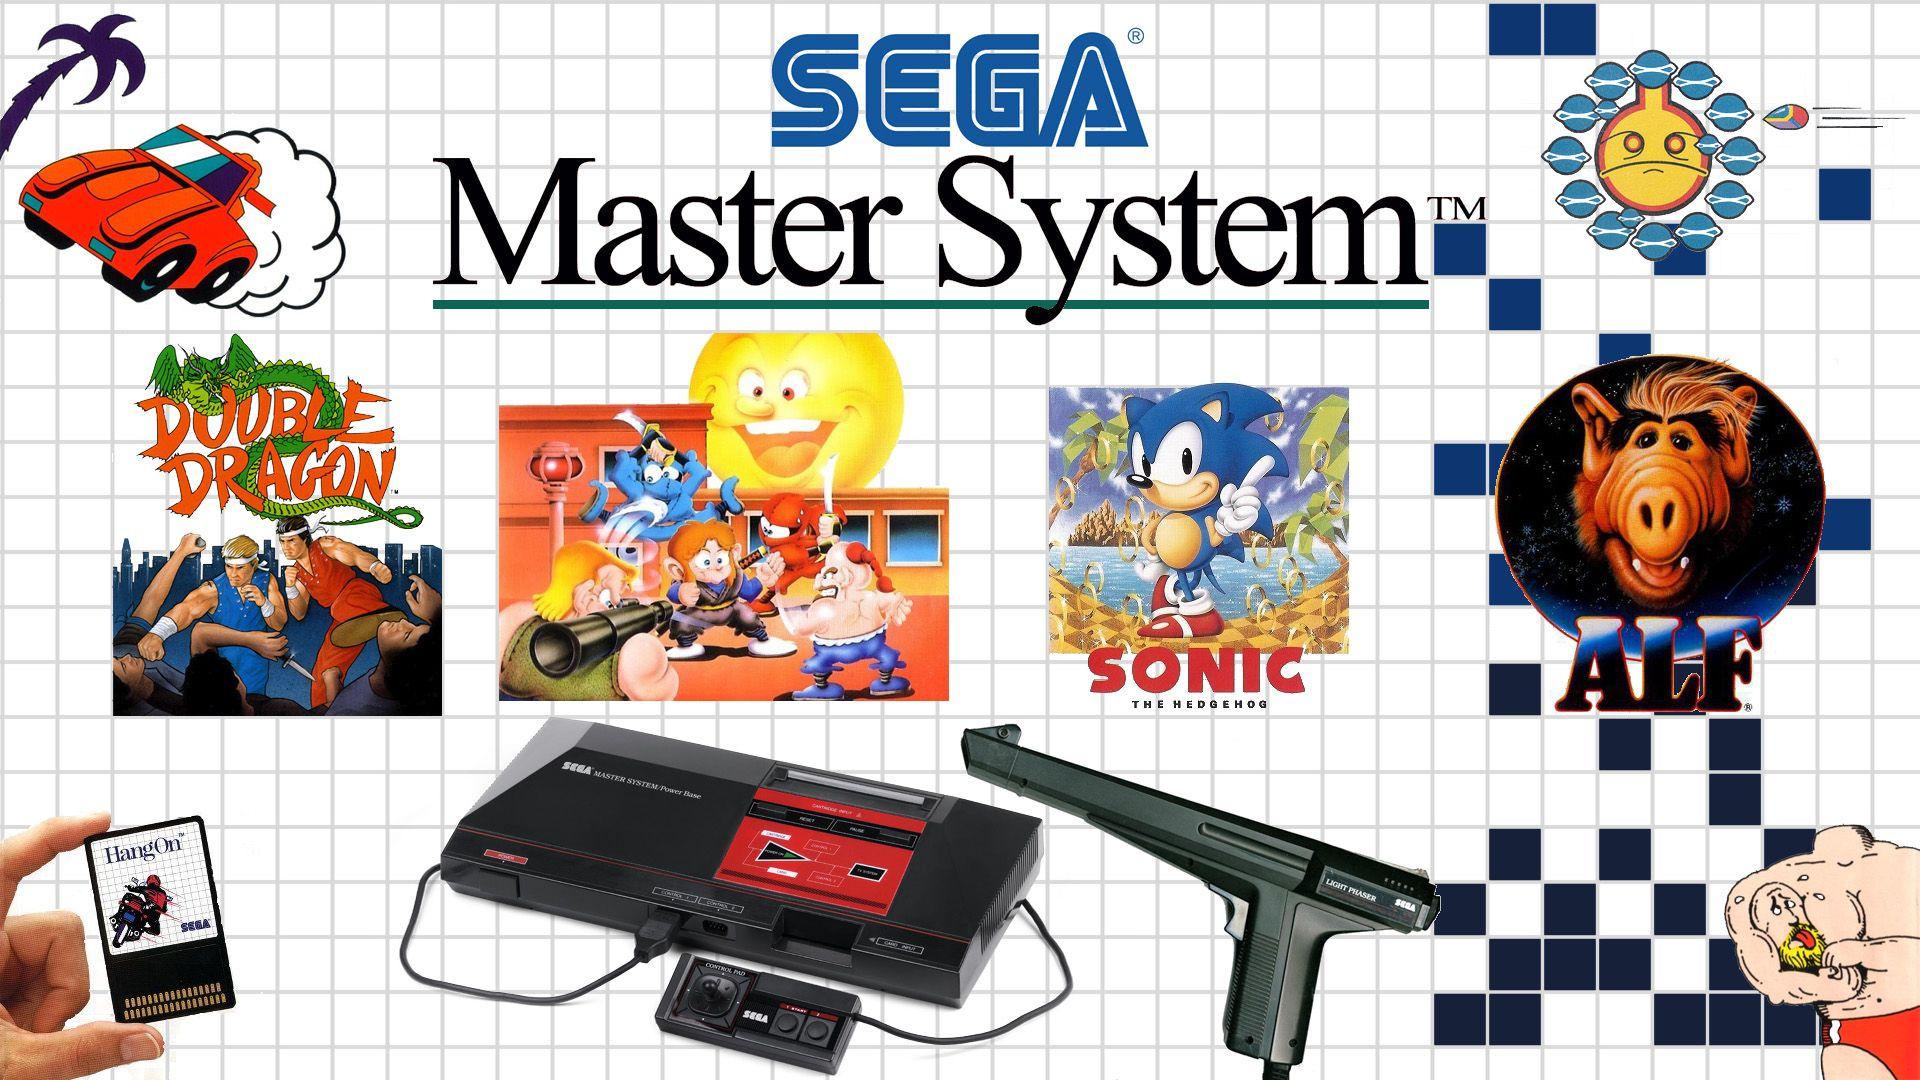 SEGA Master System Wallpaper for Your Desktop // PoisonMushroom.Org